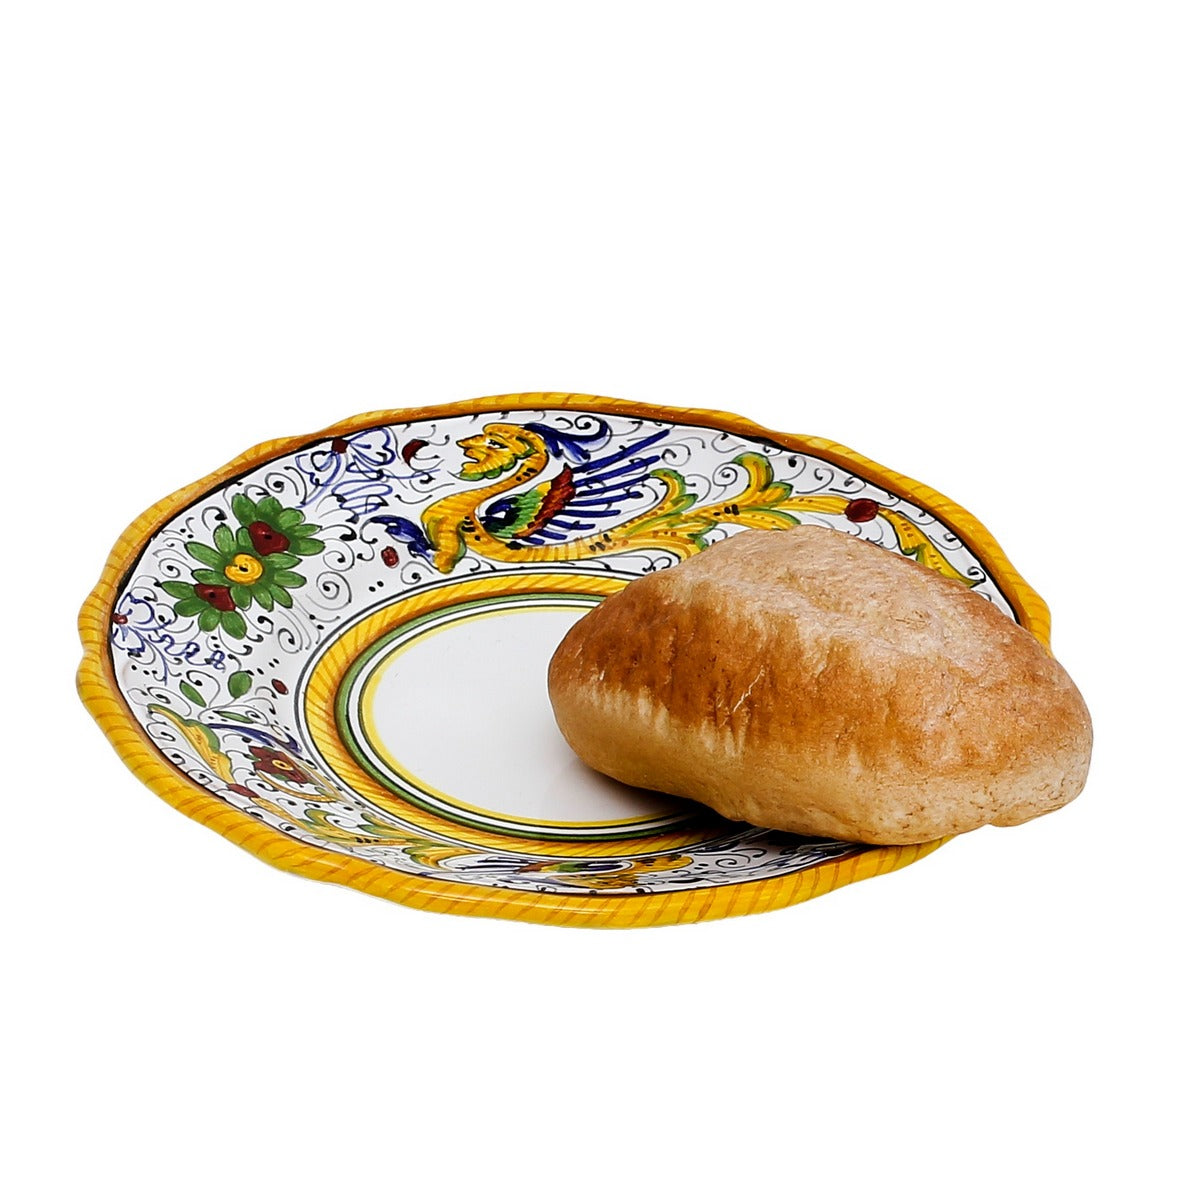 RAFFAELLESCO DELUXE: Bread and Butter Plate - Artistica.com